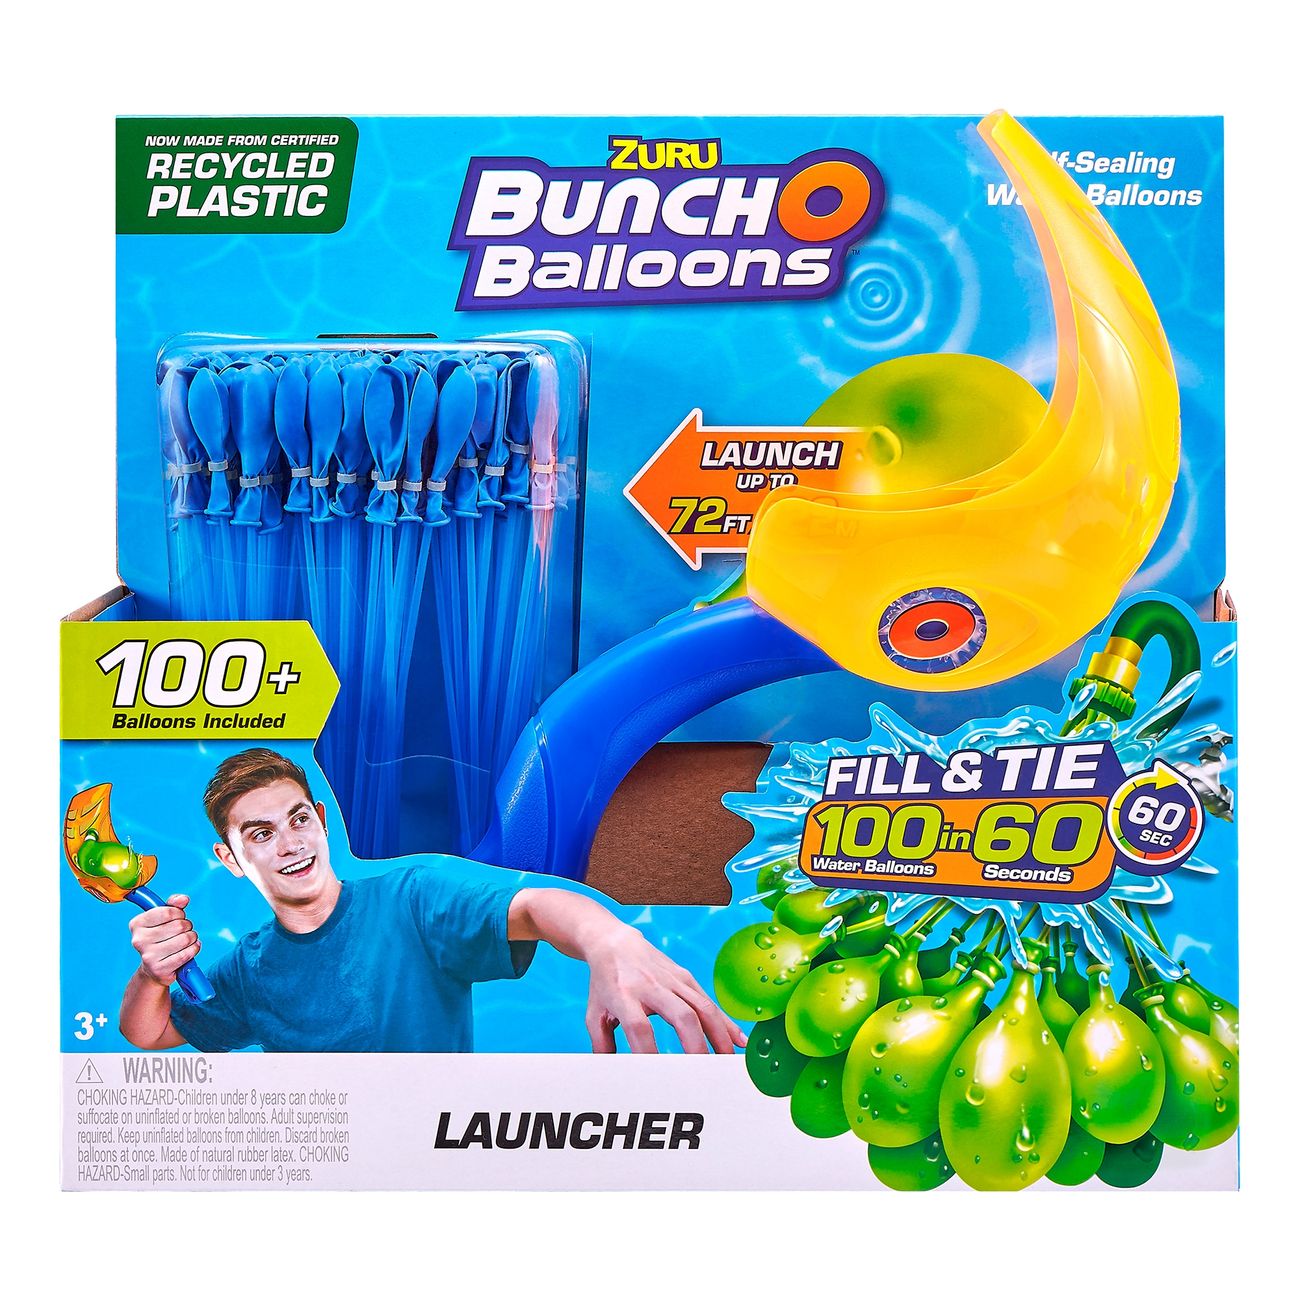 bunch-o-balloons-vattenballonger-med-kastare-94915-4